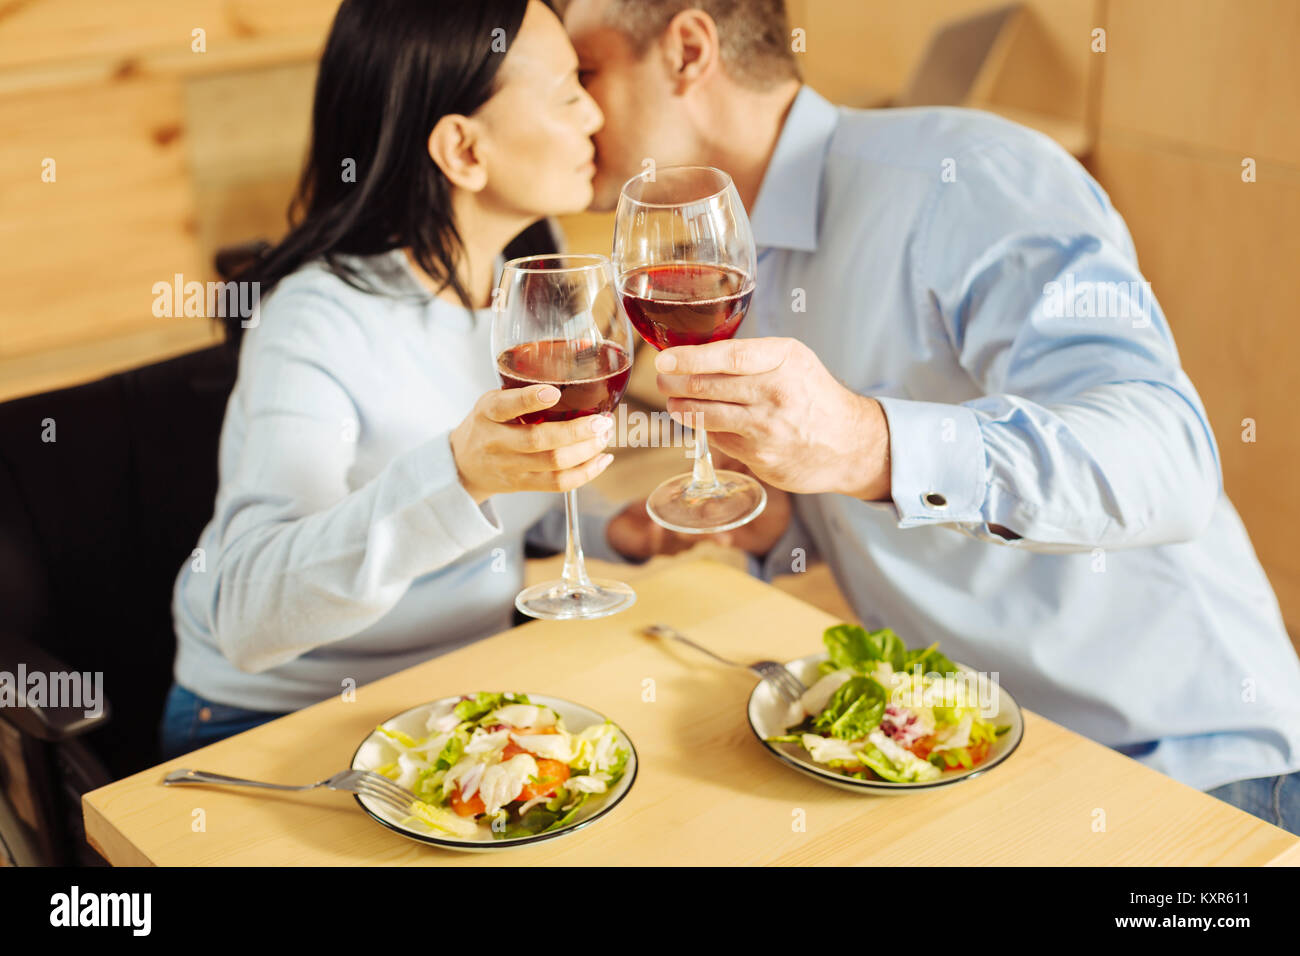 Amare giovane baciare e bere il vino Foto Stock